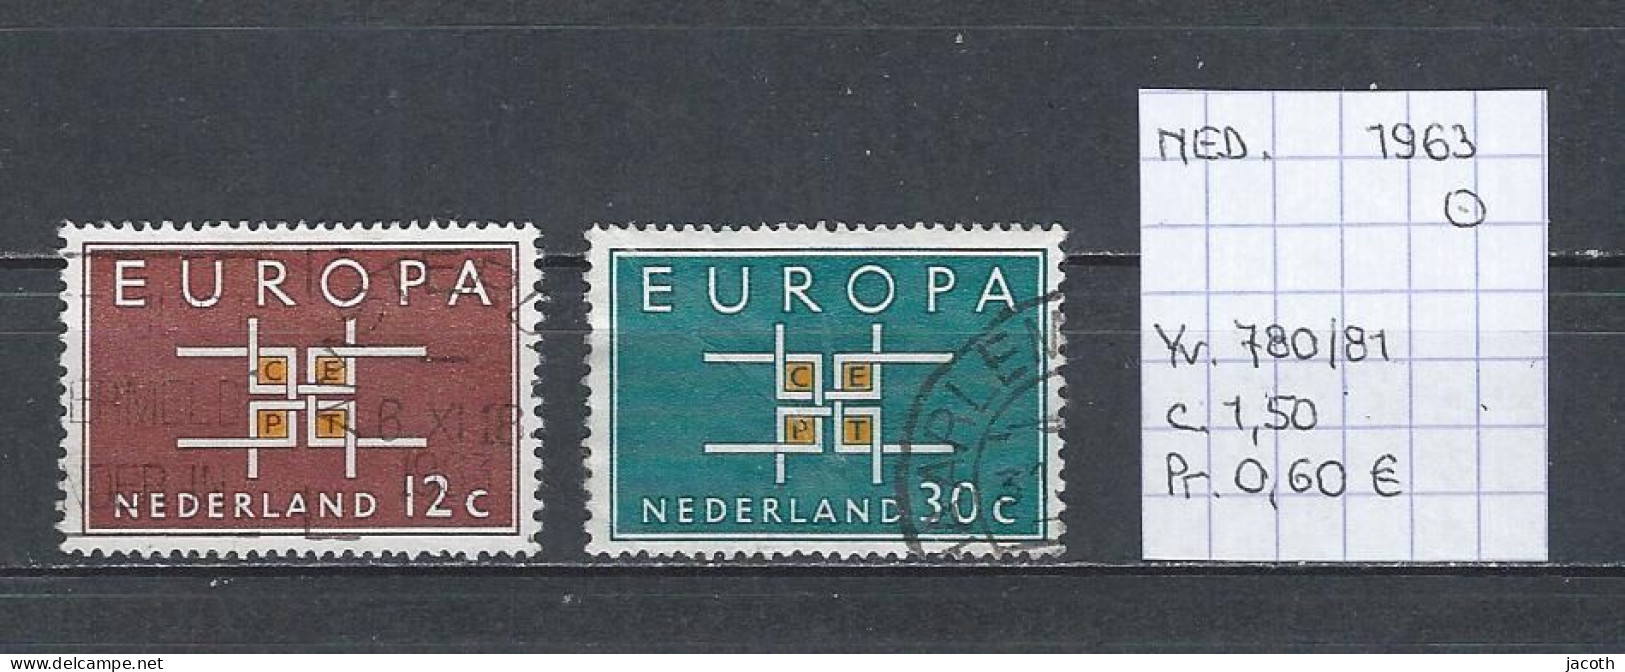 (TJ) Europa CEPT 1963 - Nederland YT 780/81 (gest./obl./used) - 1963